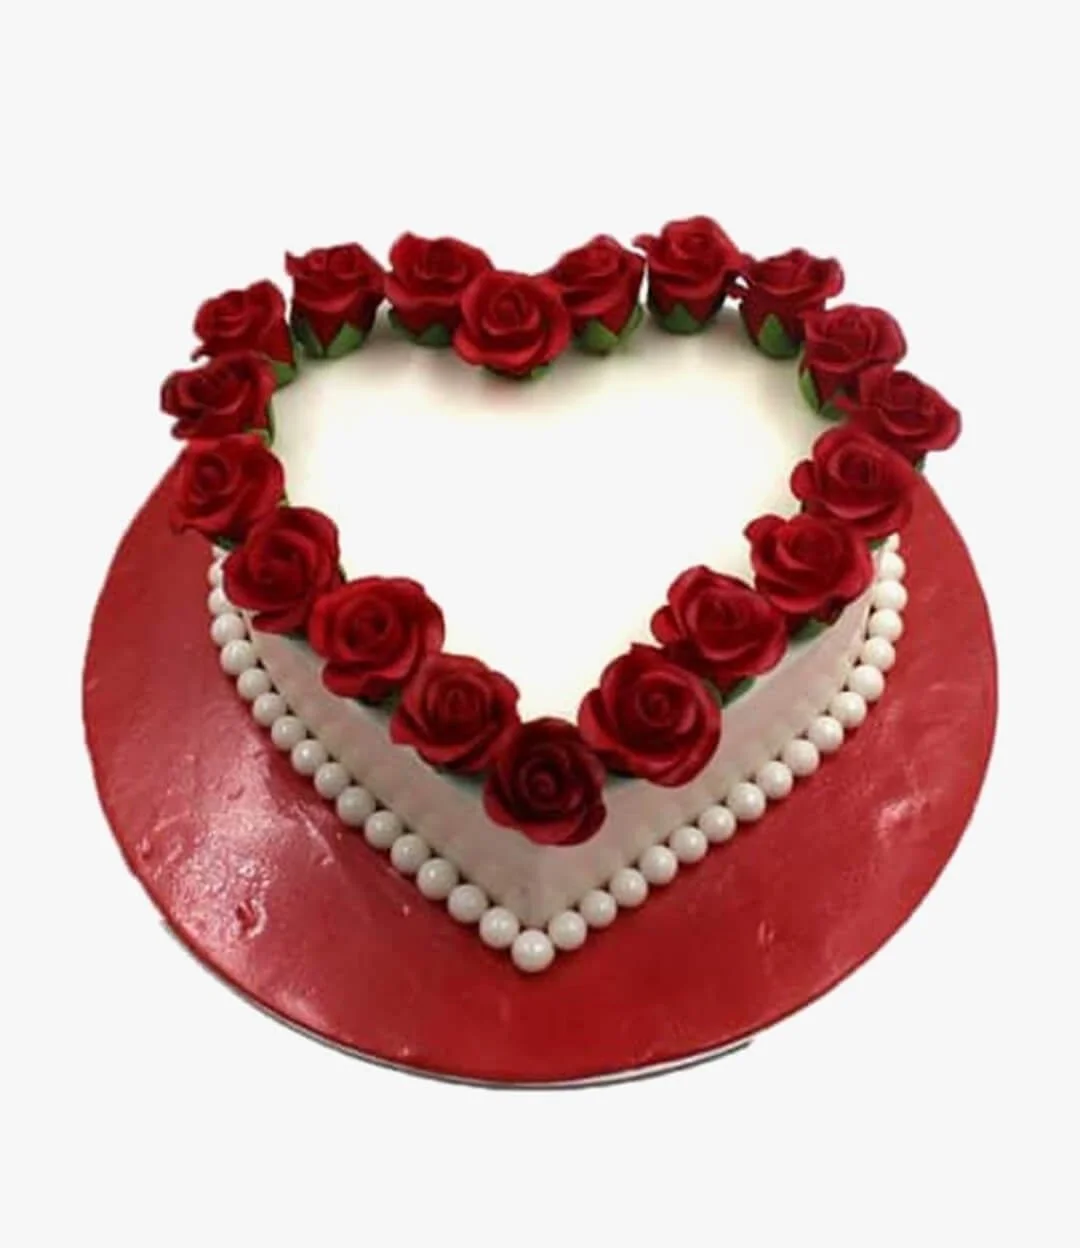 Valentine's Rose Cake 